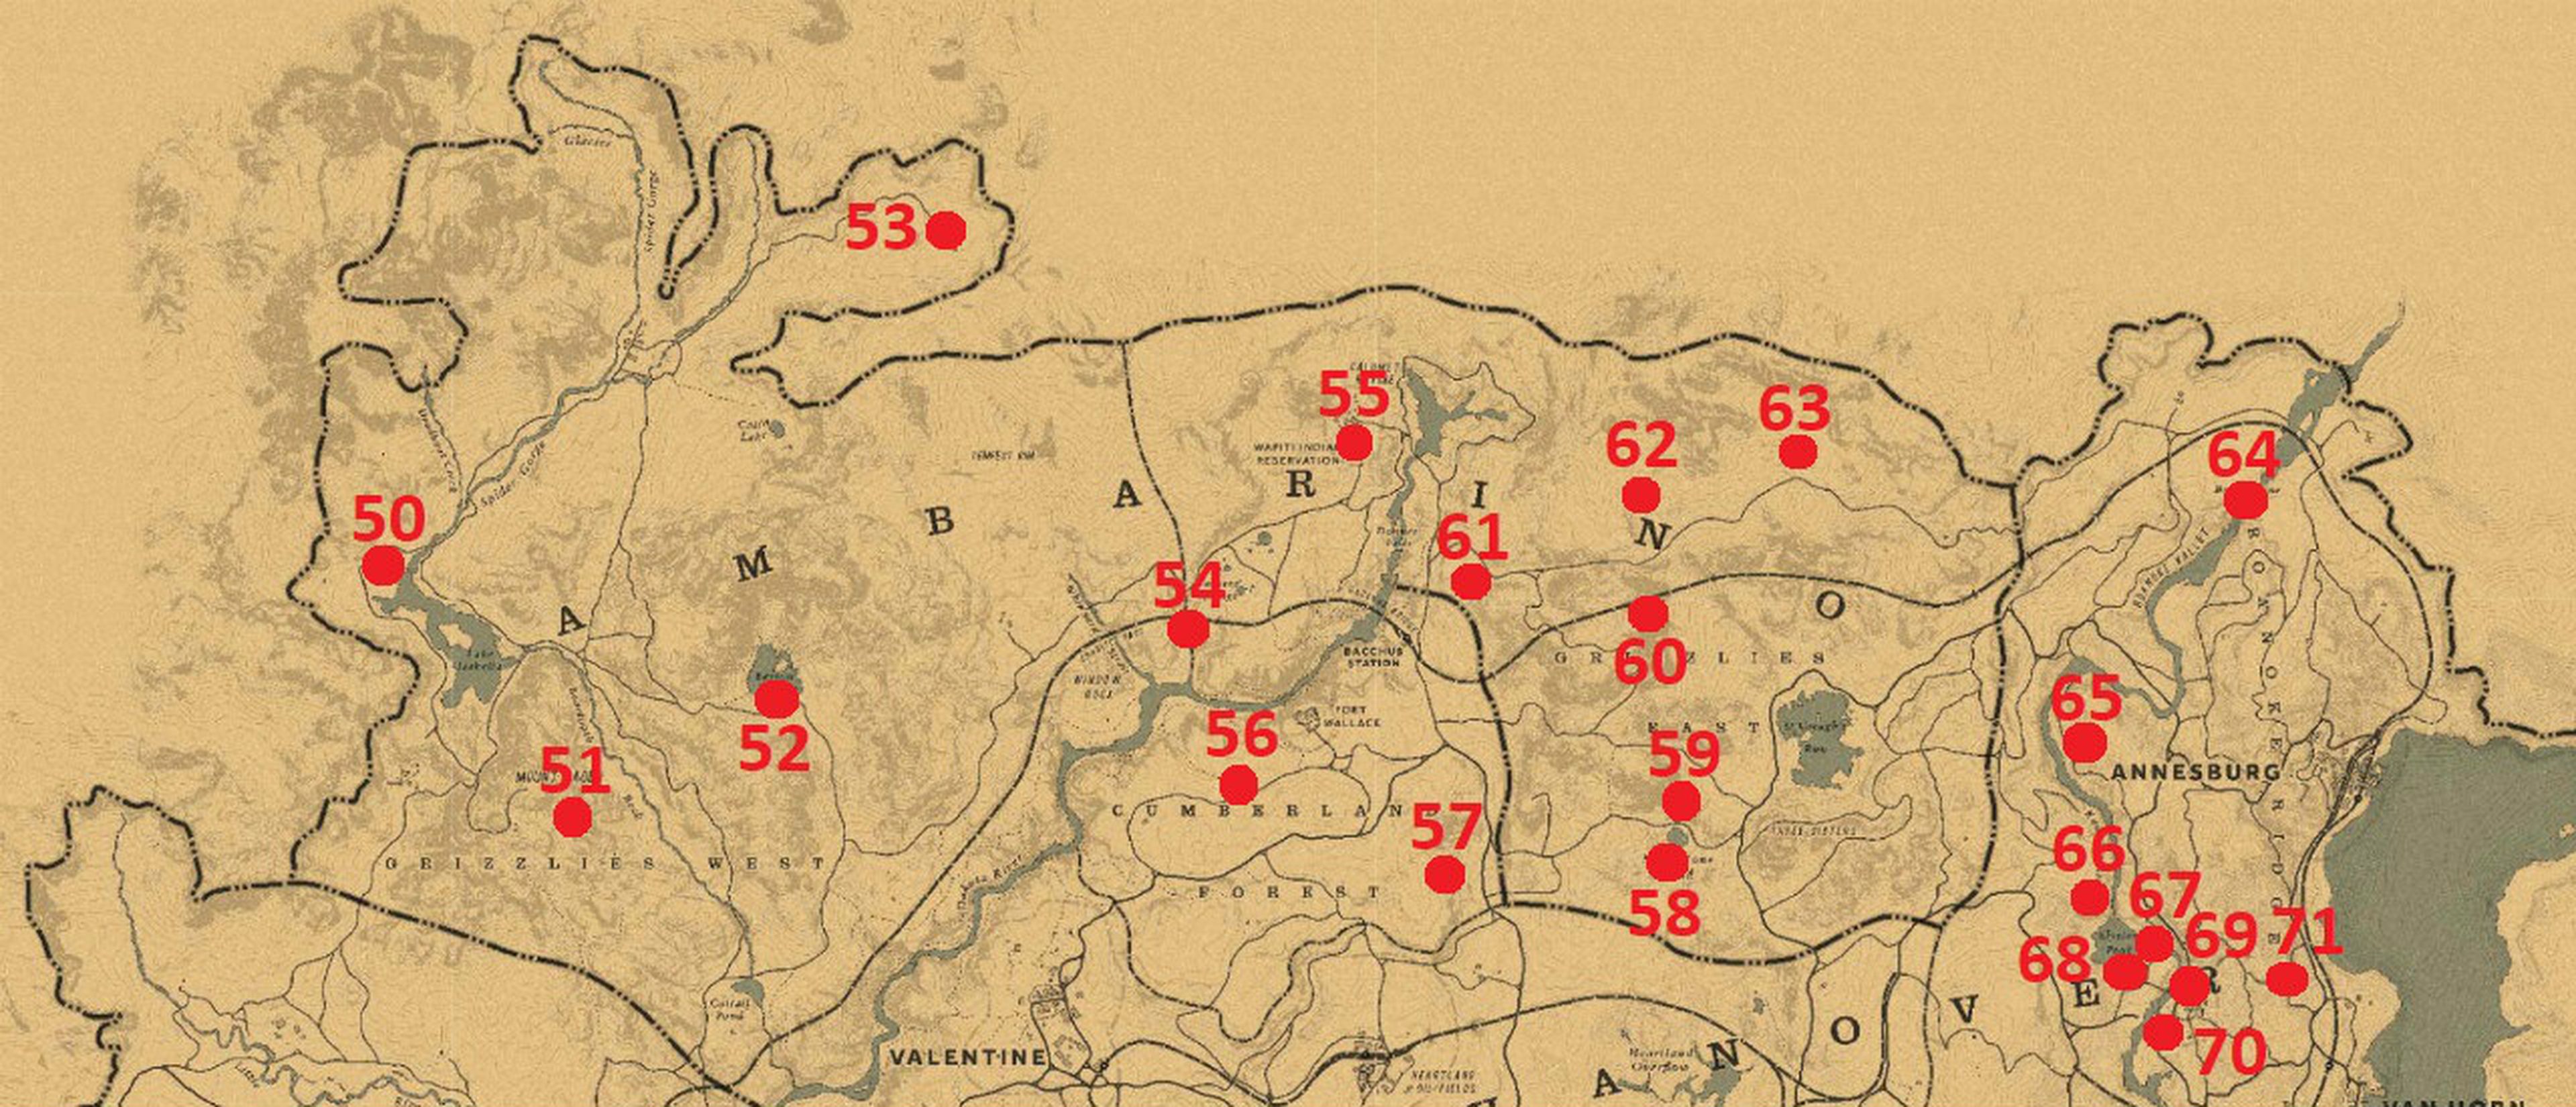 Mapa 3 cofres y cajas fuertes Red Dead Redemption 2